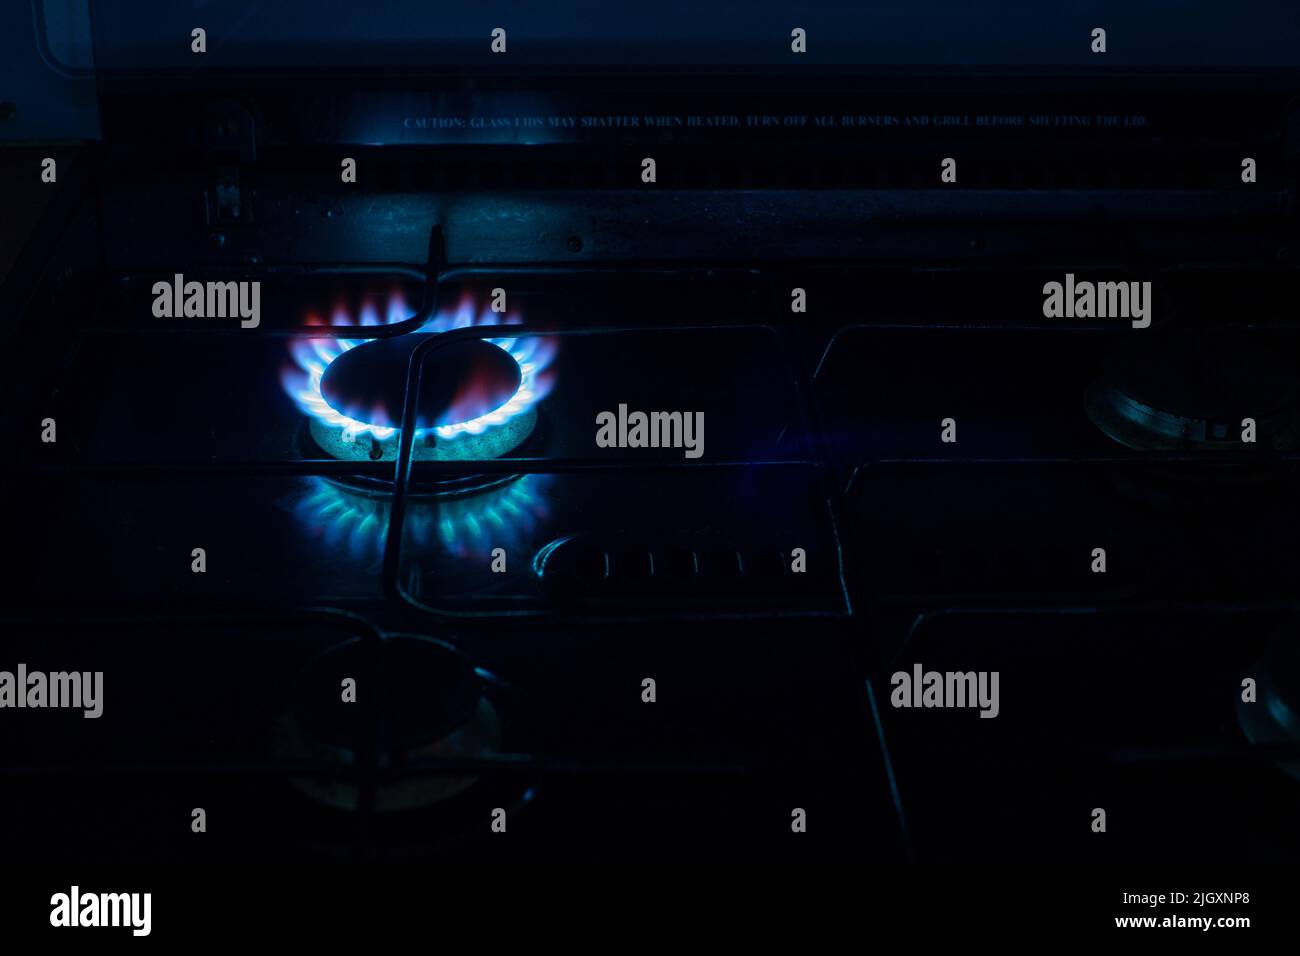 Fornelli a gas o bruciatore con emissione di fiamma blu. Concetti di energia, fatture, riscaldamento, cucinare, combustibili fossili, inverno Foto Stock